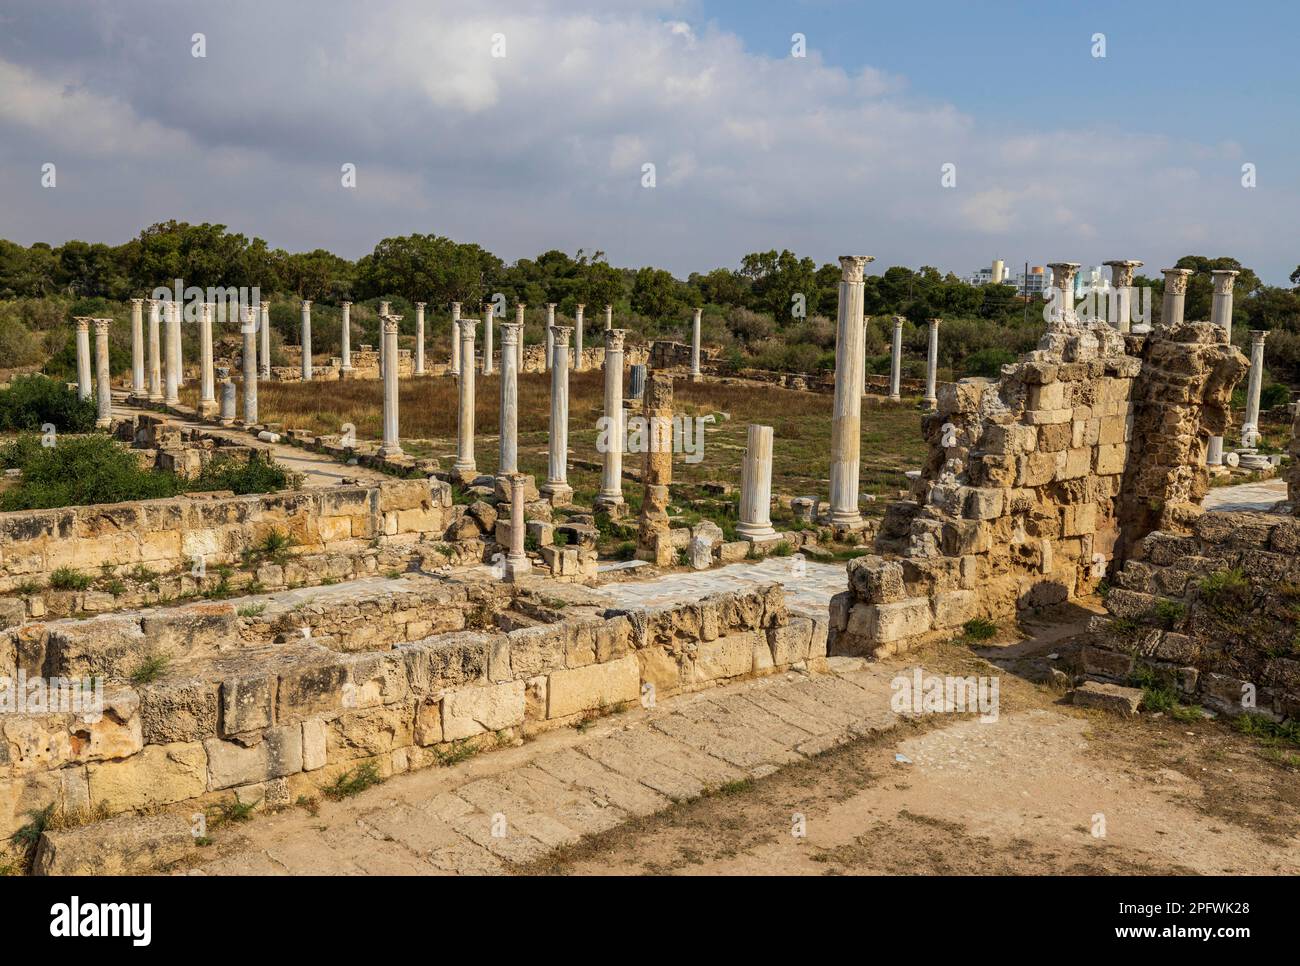 7. Juni 2022, Famagusta, Zypern: Säulen des Gymnasiums in Salamis mit mehreren römischen Bädern in der Nähe. Salamis war ein alter griechischer Stadtstaat an der Ostküste Zyperns, an der Mündung des Flusses Pedieos, nahe dem modernen Famagusta. Der Gründer von Salamis war Teucer, Sohn von Telamon, König der griechischen Insel Salamis, der nach dem Trojanischen Krieg nicht nach Hause zurückkehren konnte, weil er es versäumt hatte, seinen Bruder Ajax zu rächen. Archäologische Funde reichen bis ins 11. Jahrhundert v. Chr. zurück, späte Bronzezeit. Das „Kulturzentrum“ Salamis während der Römerzeit hat ein Gymnasium, Theater, Amphitheater, Stadion und Stockfoto